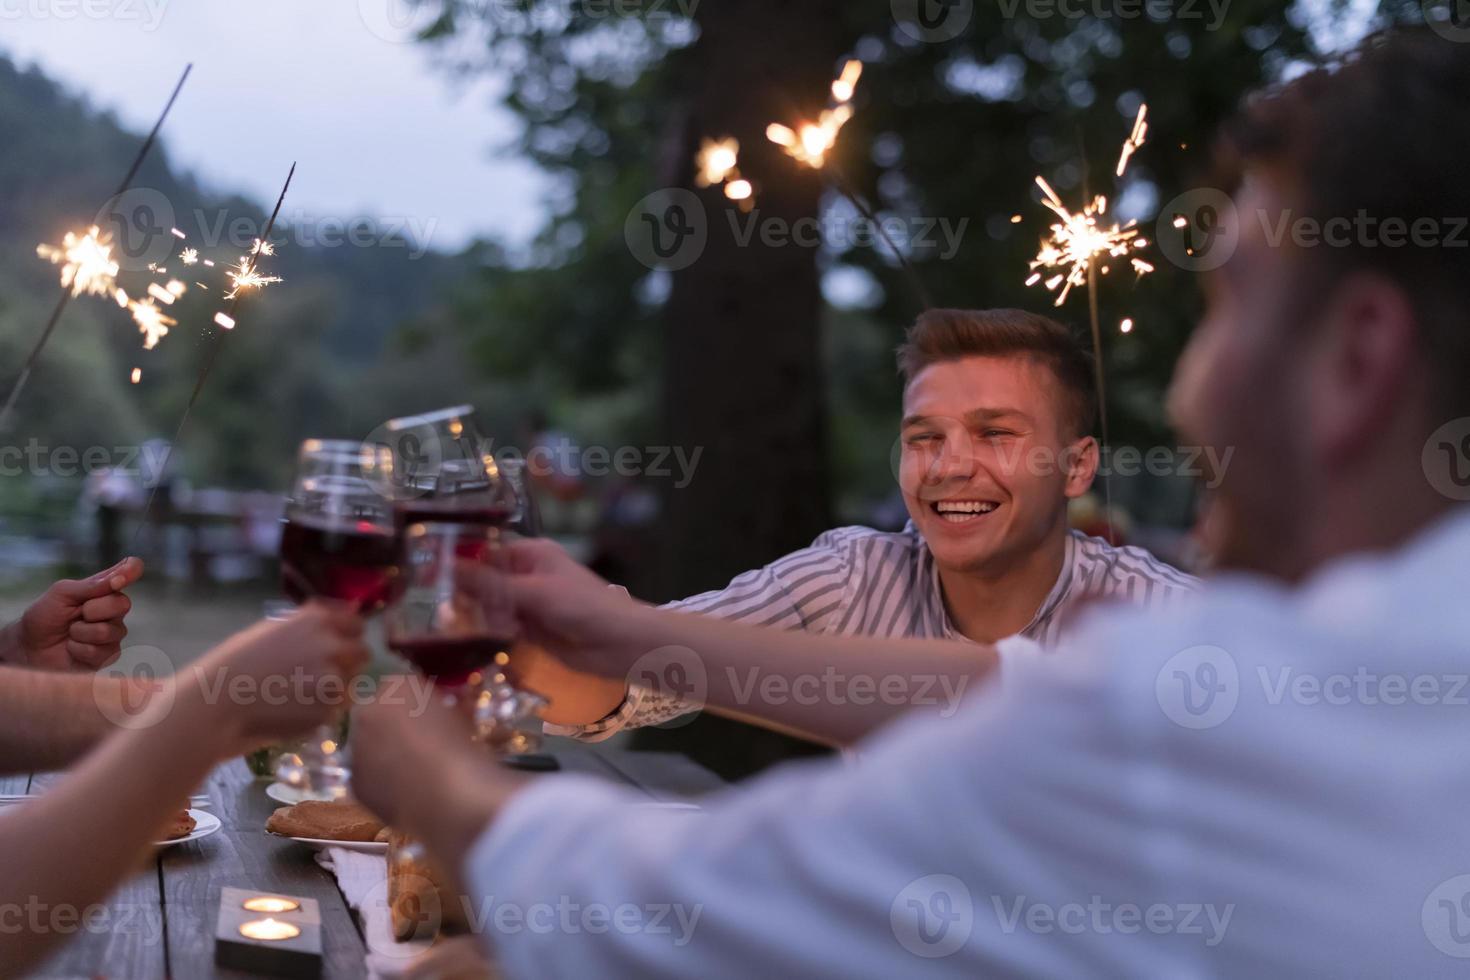 vrienden roosteren rood wijn glas terwijl hebben picknick Frans avondeten partij buitenshuis foto